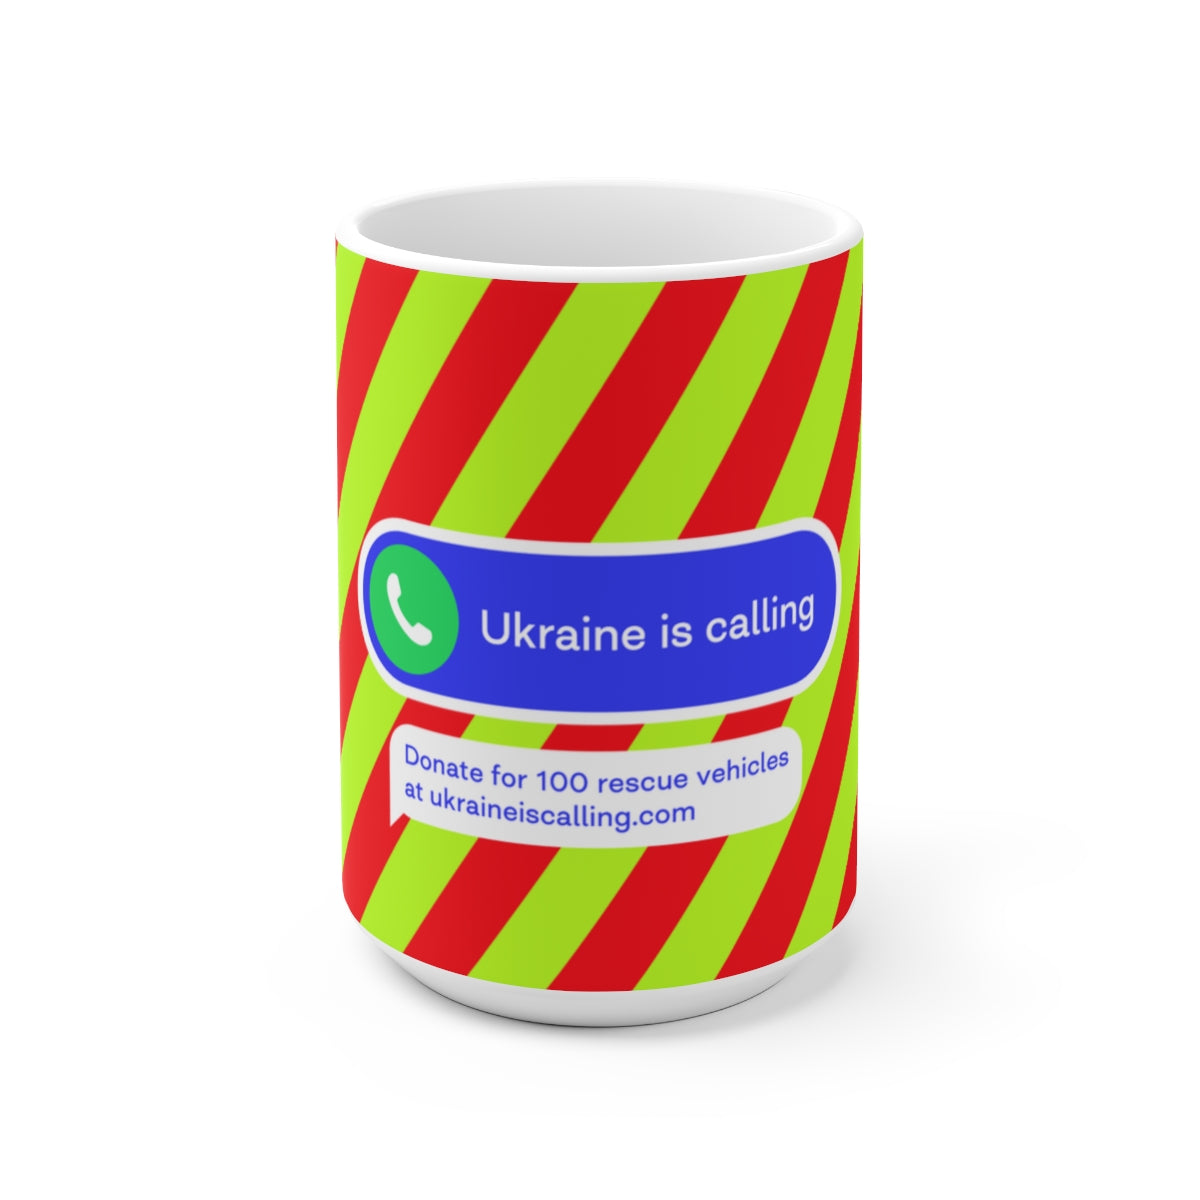 捐赠给乌克兰 - 陶瓷杯